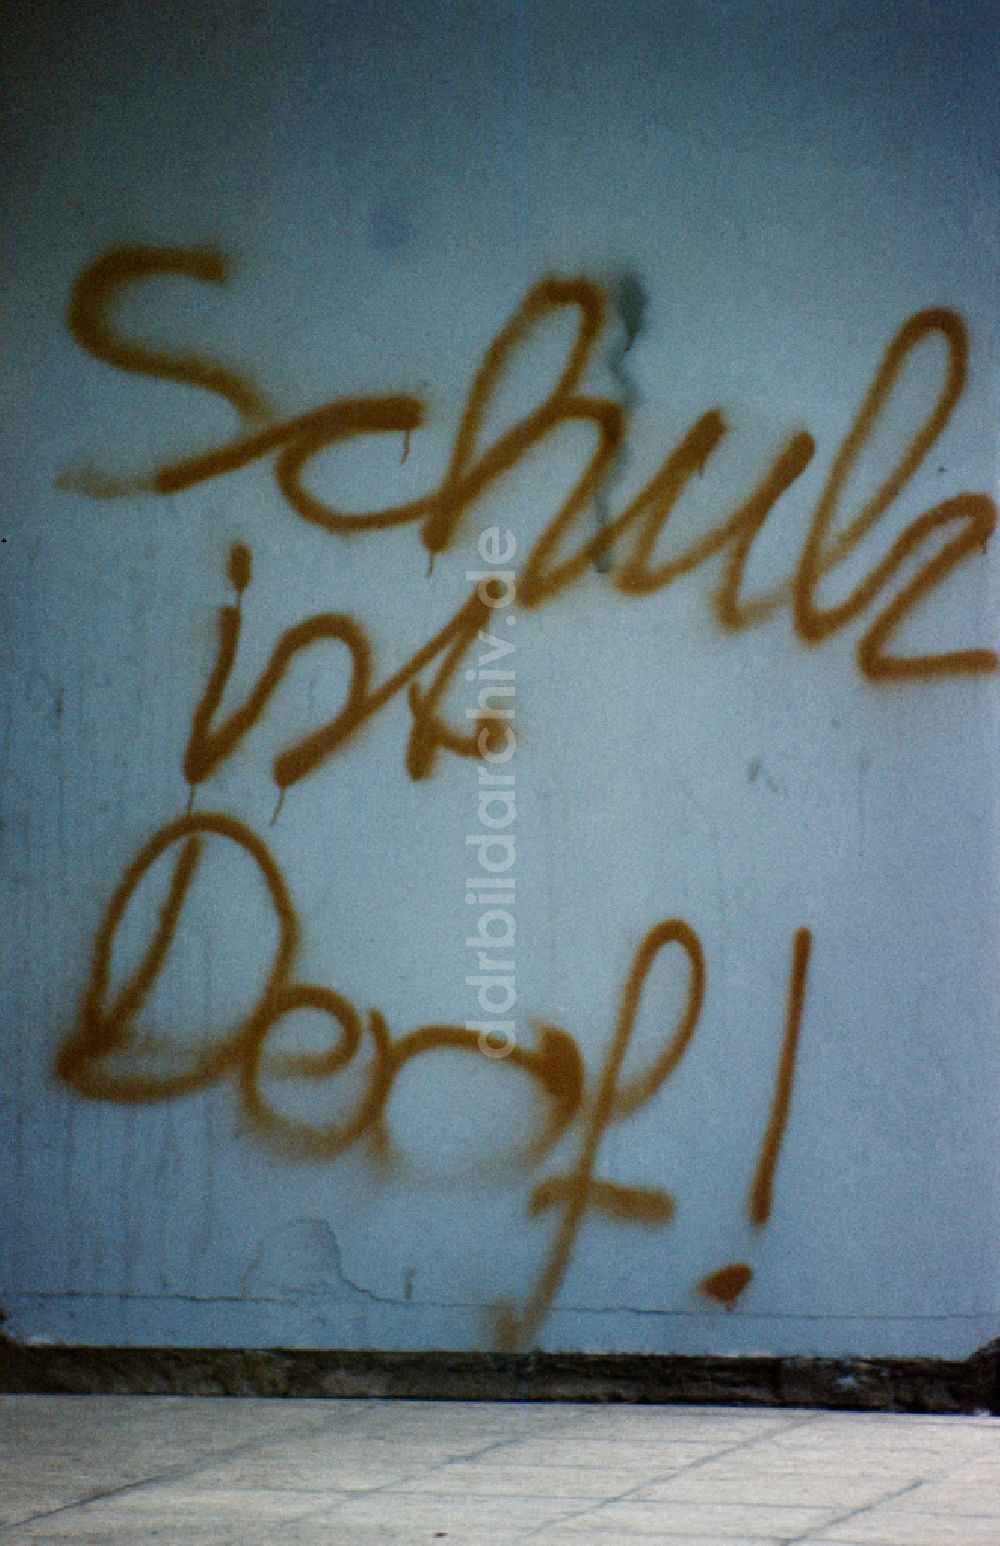 DDR-Bildarchiv: Berlin - Schule ist Doo ! -Schriftzug auf einer Hauswand in Ostberlin in der DDR